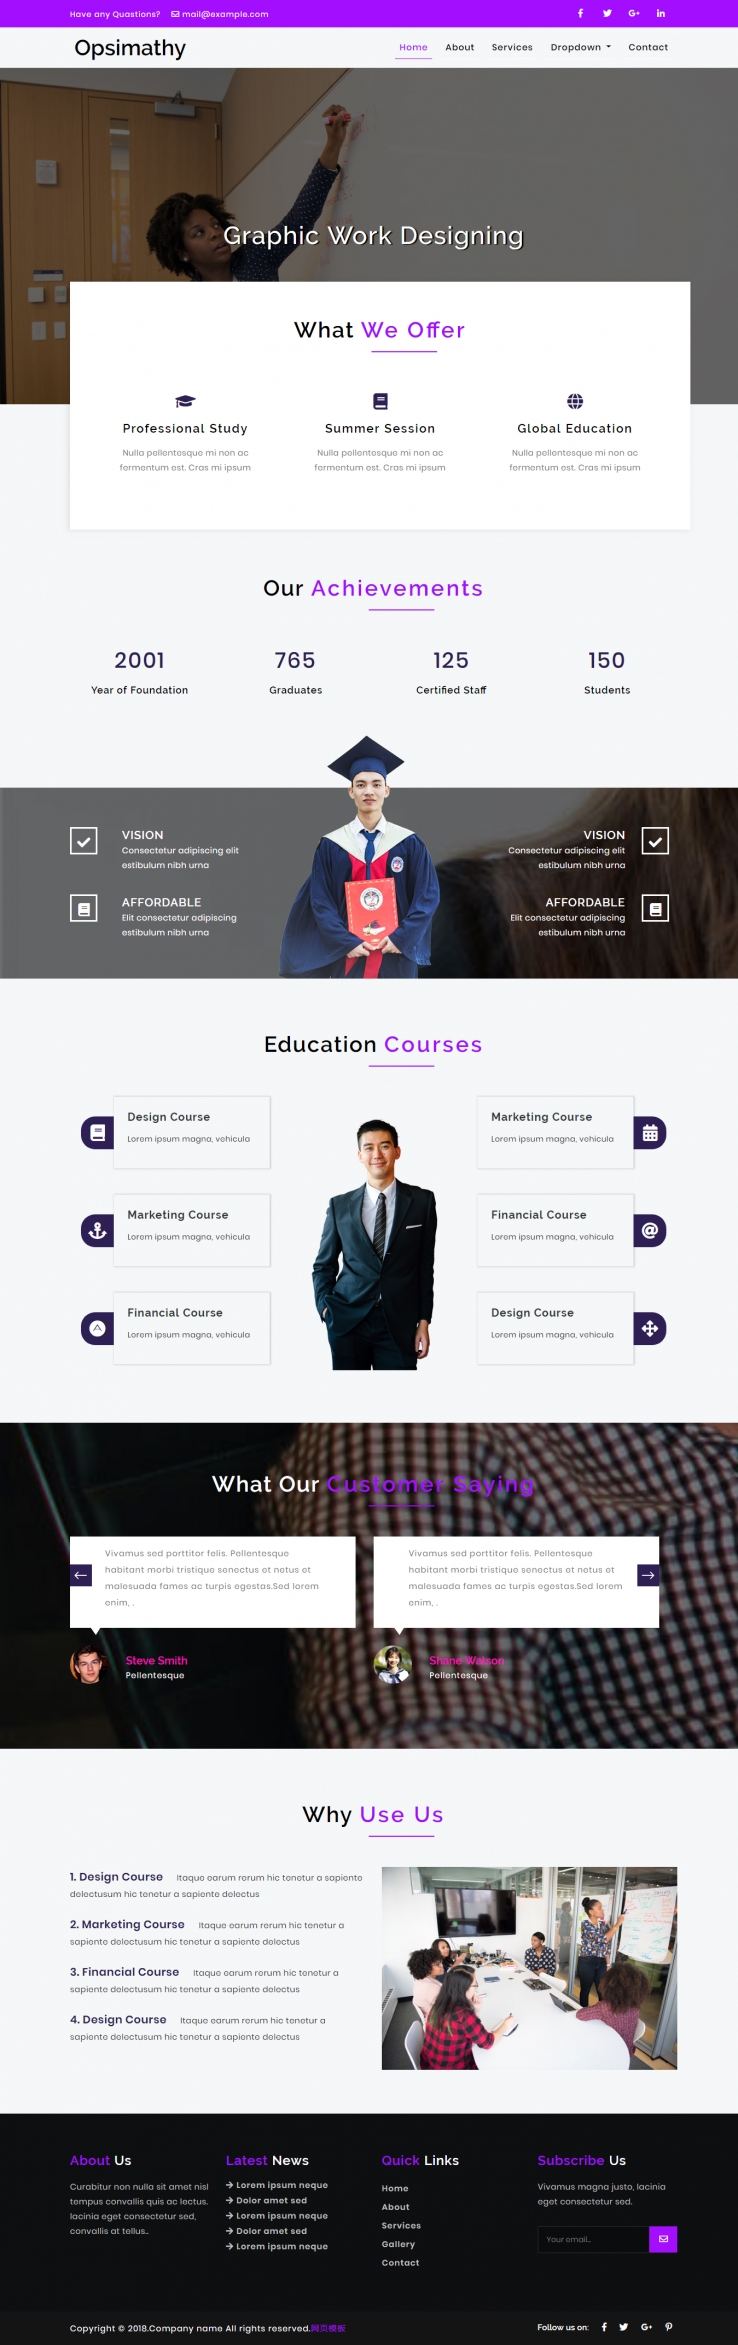 紫色欧美风格的课程教育培训企业网站源码下载